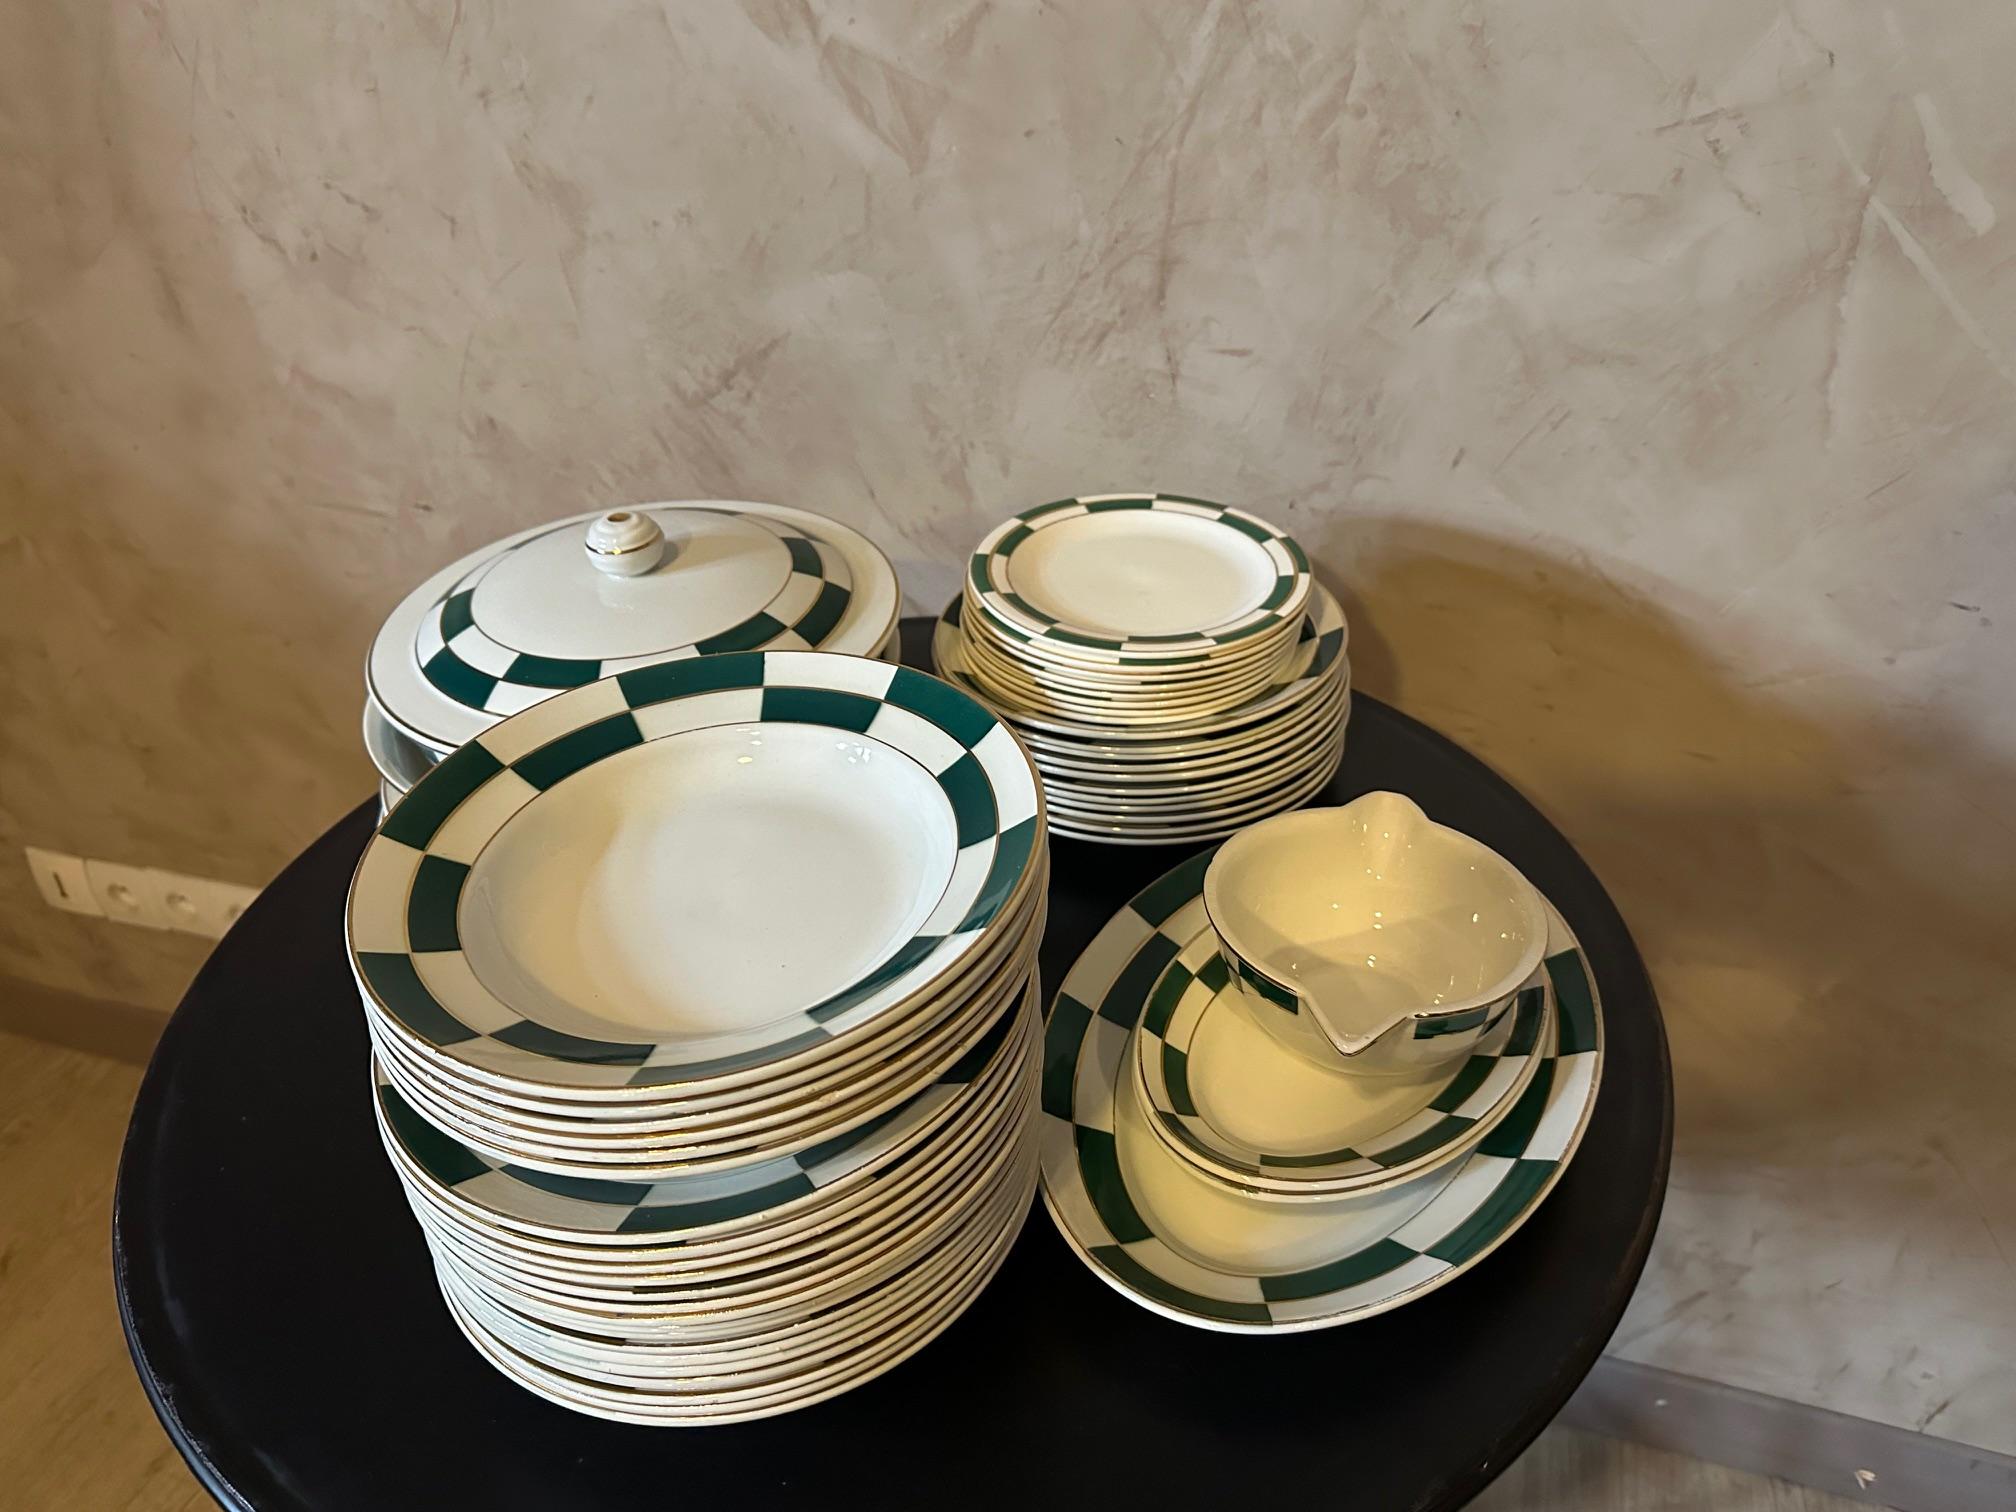 Très beau service art déco en porcelaine opaque de la faïencerie de Luneville à décor graphique vert et filet doré. 
Ce service est composé de : 21 assiettes plates (5 légèrement ébréchées) 12 assiettes creuses. 8 assiettes à dessert (1 abîmée) 3